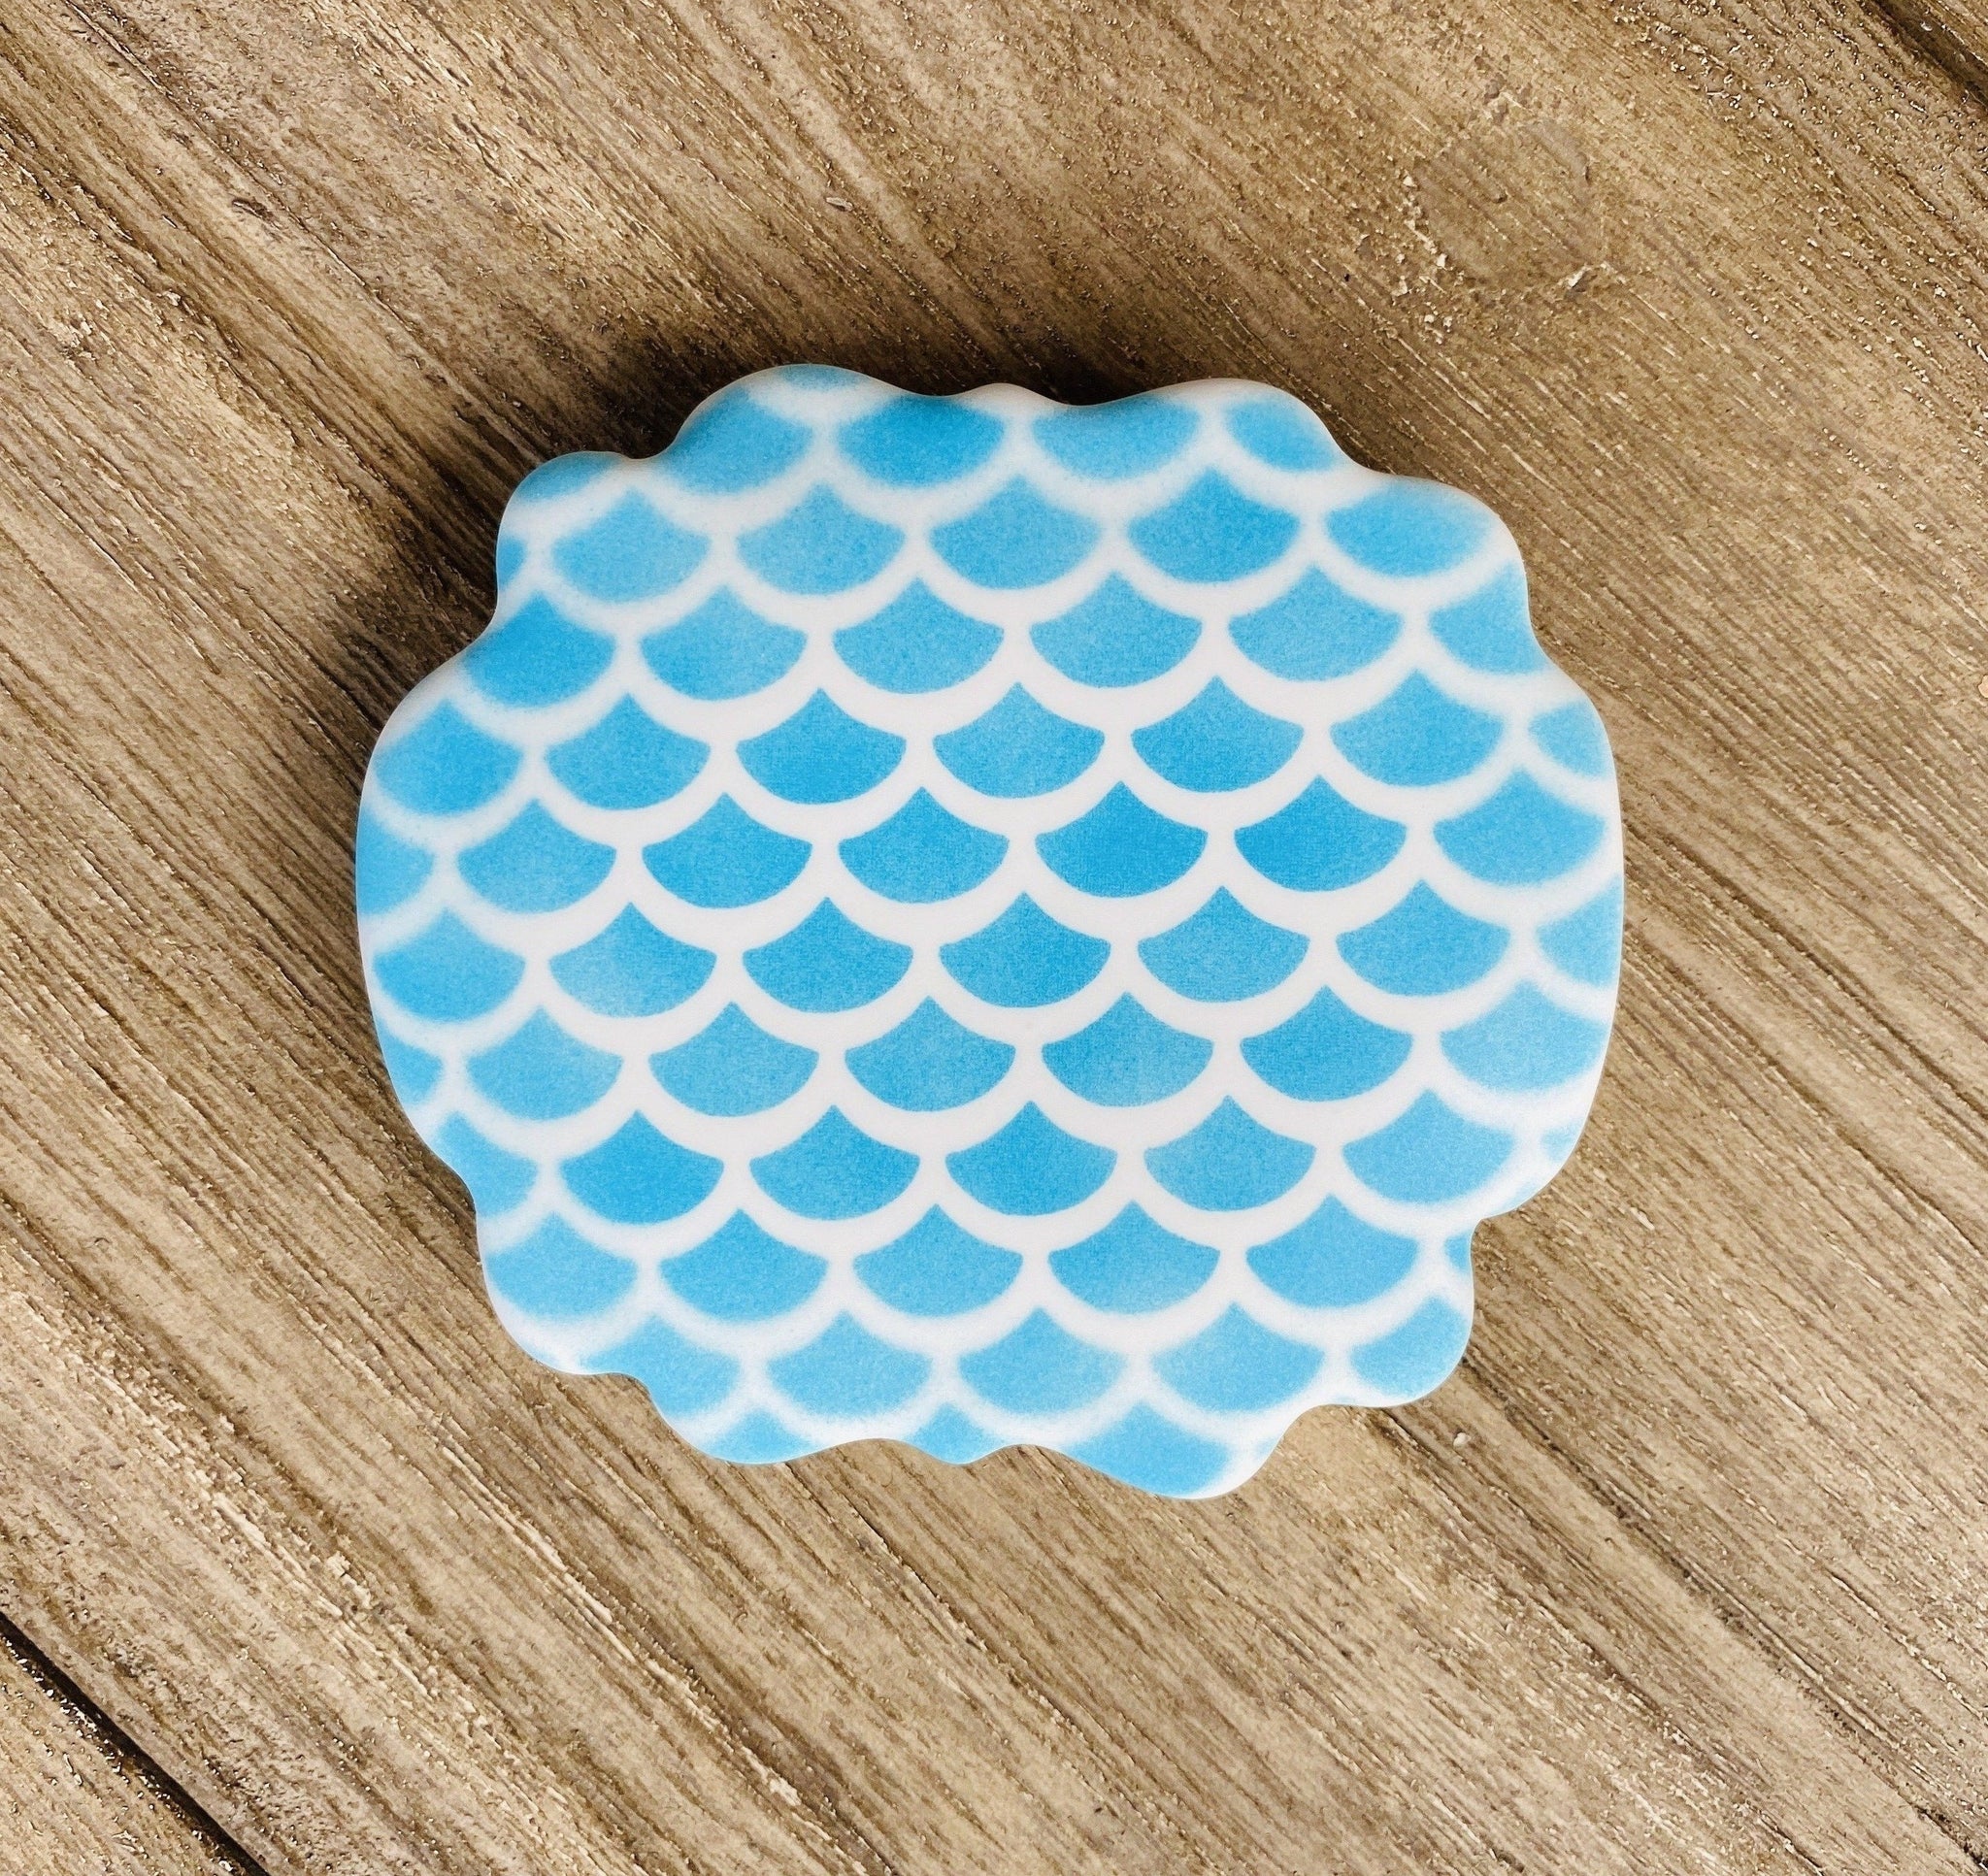 Geometric Circle Pattern Stencil - Cheap Cookie Cutters